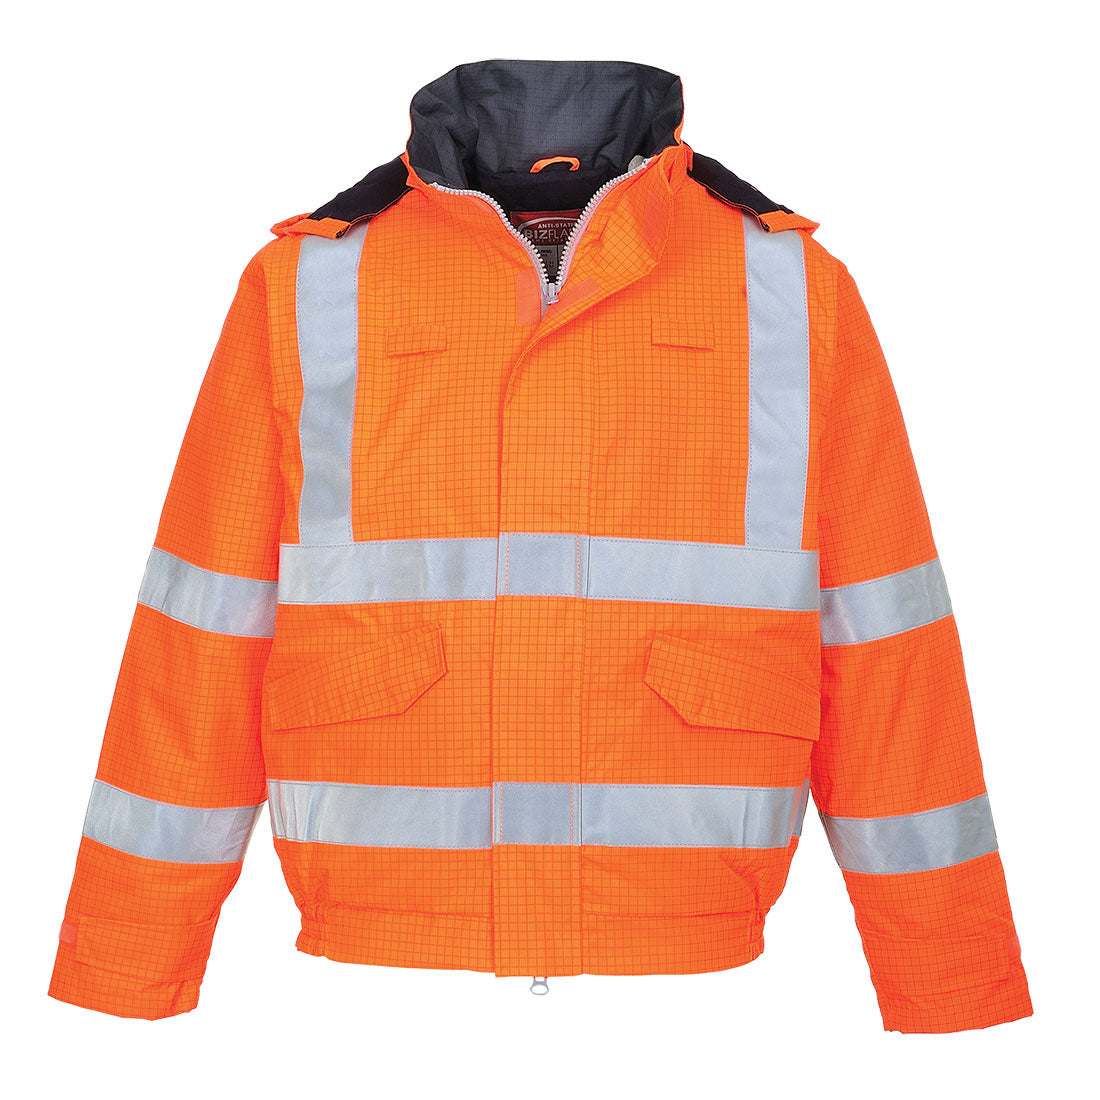 BizFlame Rain™ Jacket Flame Resistant Waterproof